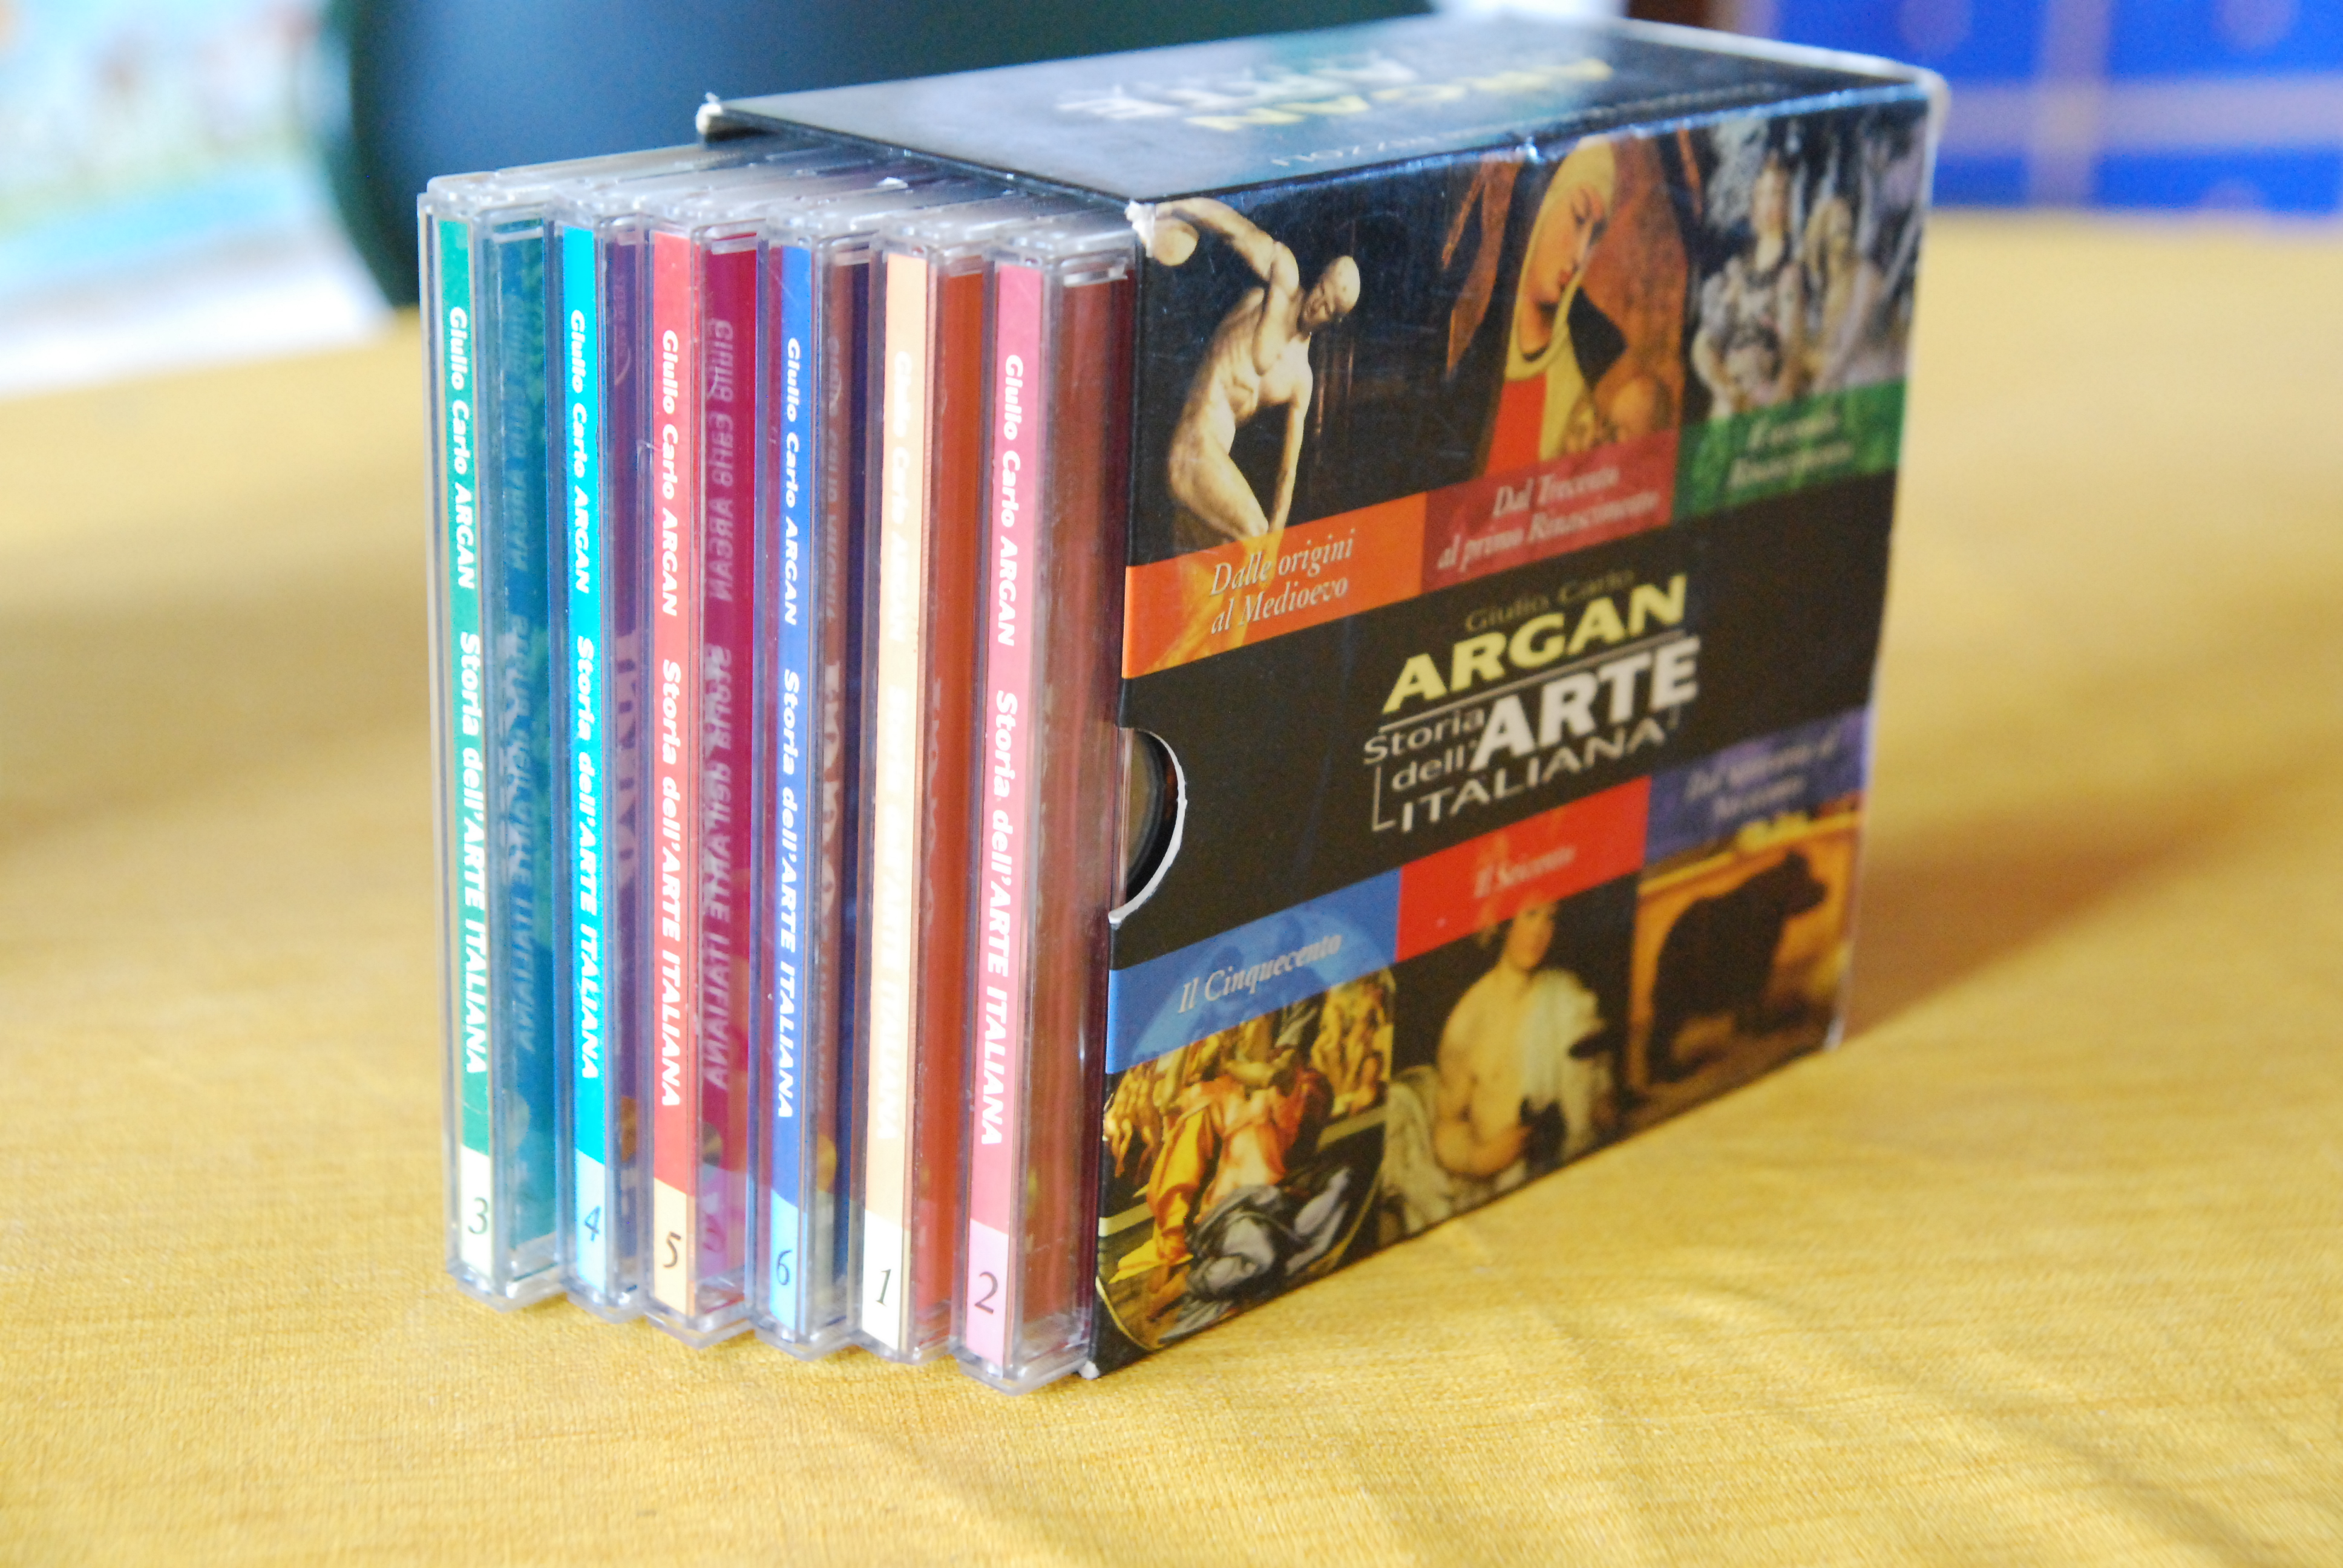 ARGAN STORIA DELL'ARTE ITALIANA 6 CD in cofanetto NUOVI da aavv